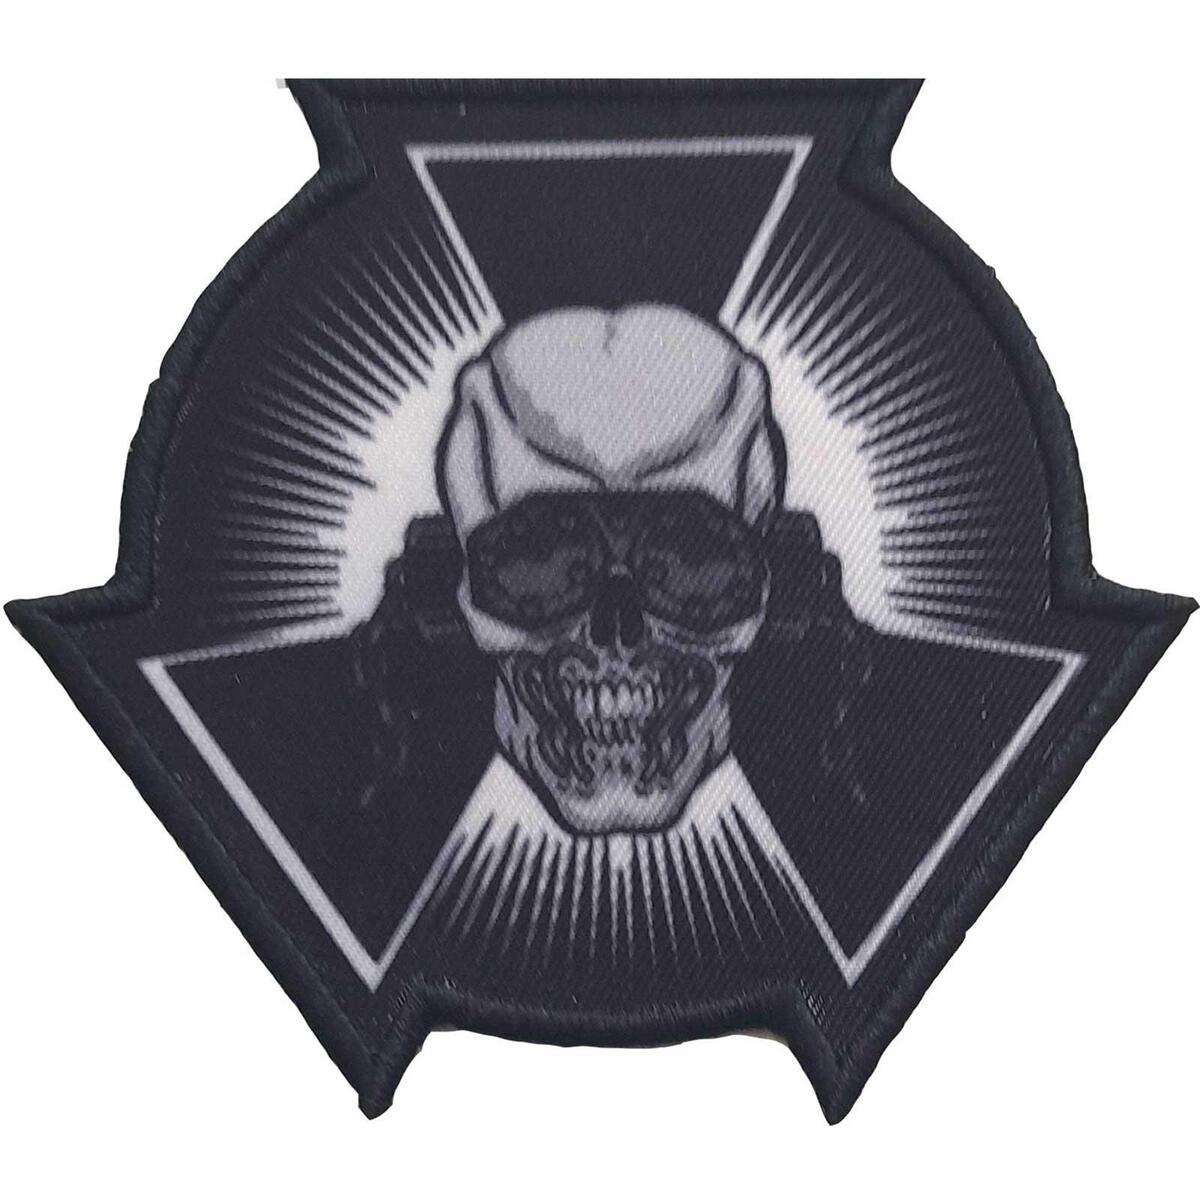 (メガデス) Megadeth オフィシャル商品 Skull Start ワッペン アイロン接着 パッチ 【海外通販】